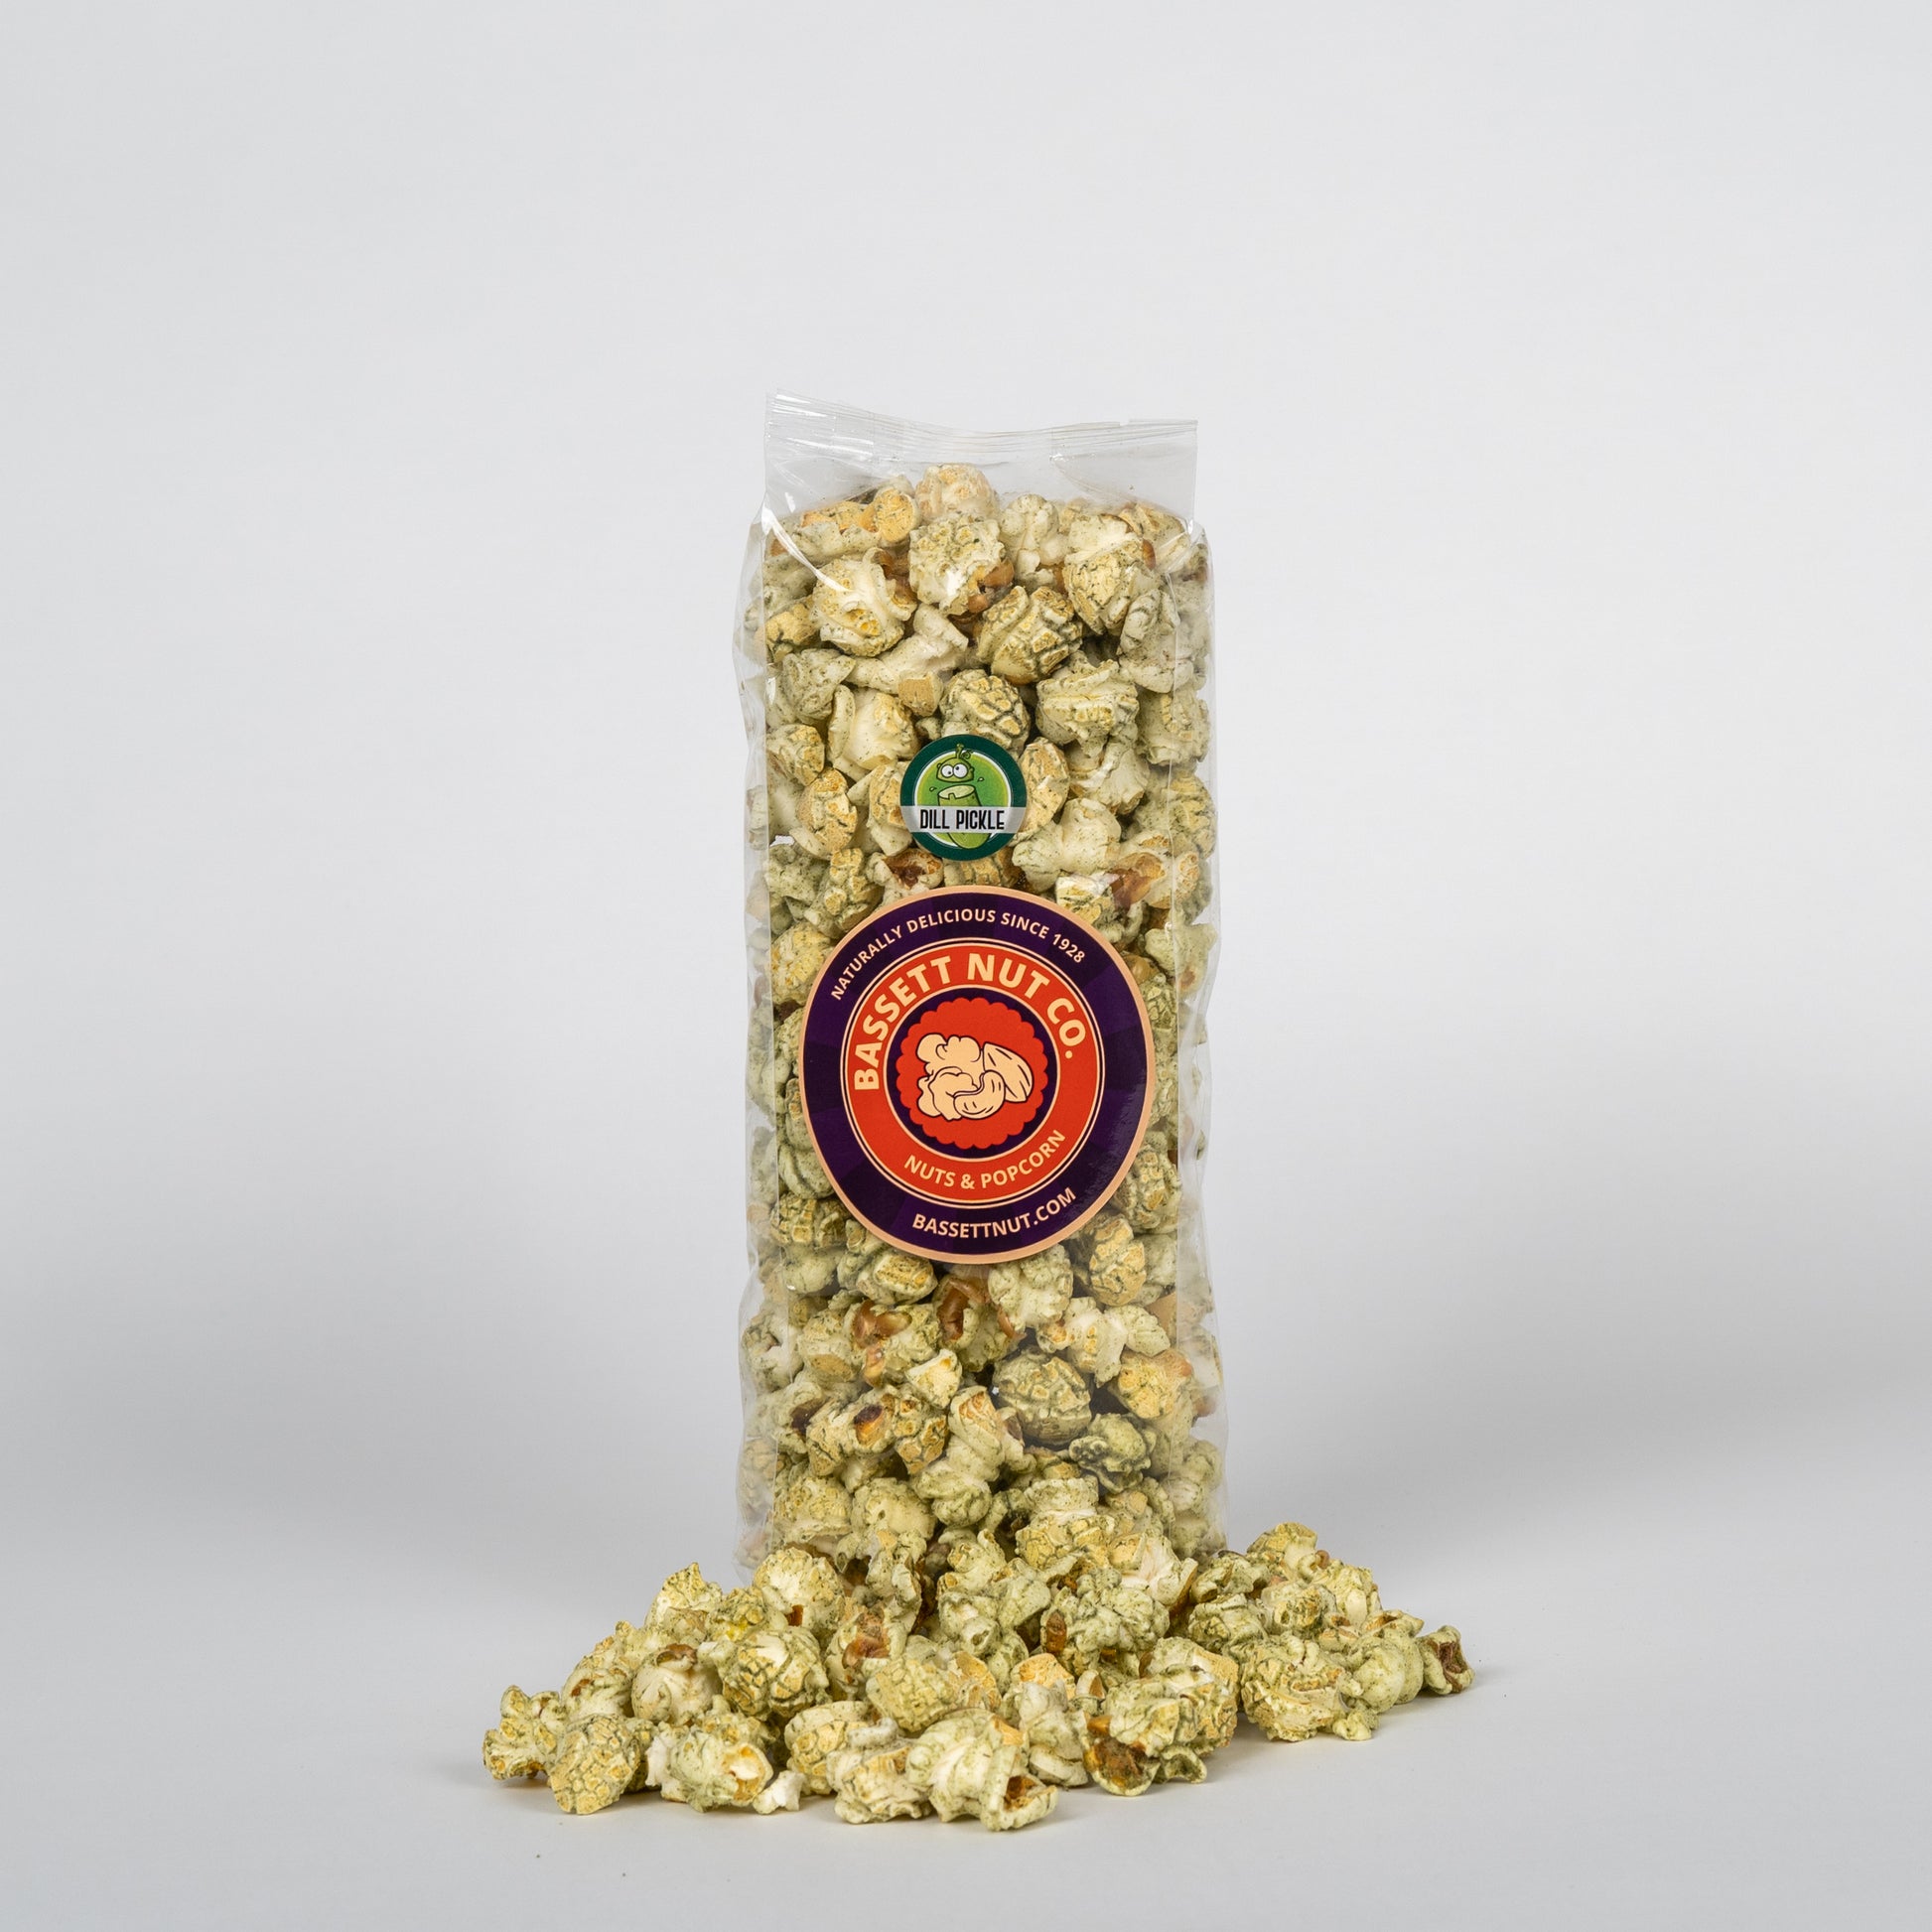 Savory Nut Box-Six 1 Pound Bags – Bassett Nut Company